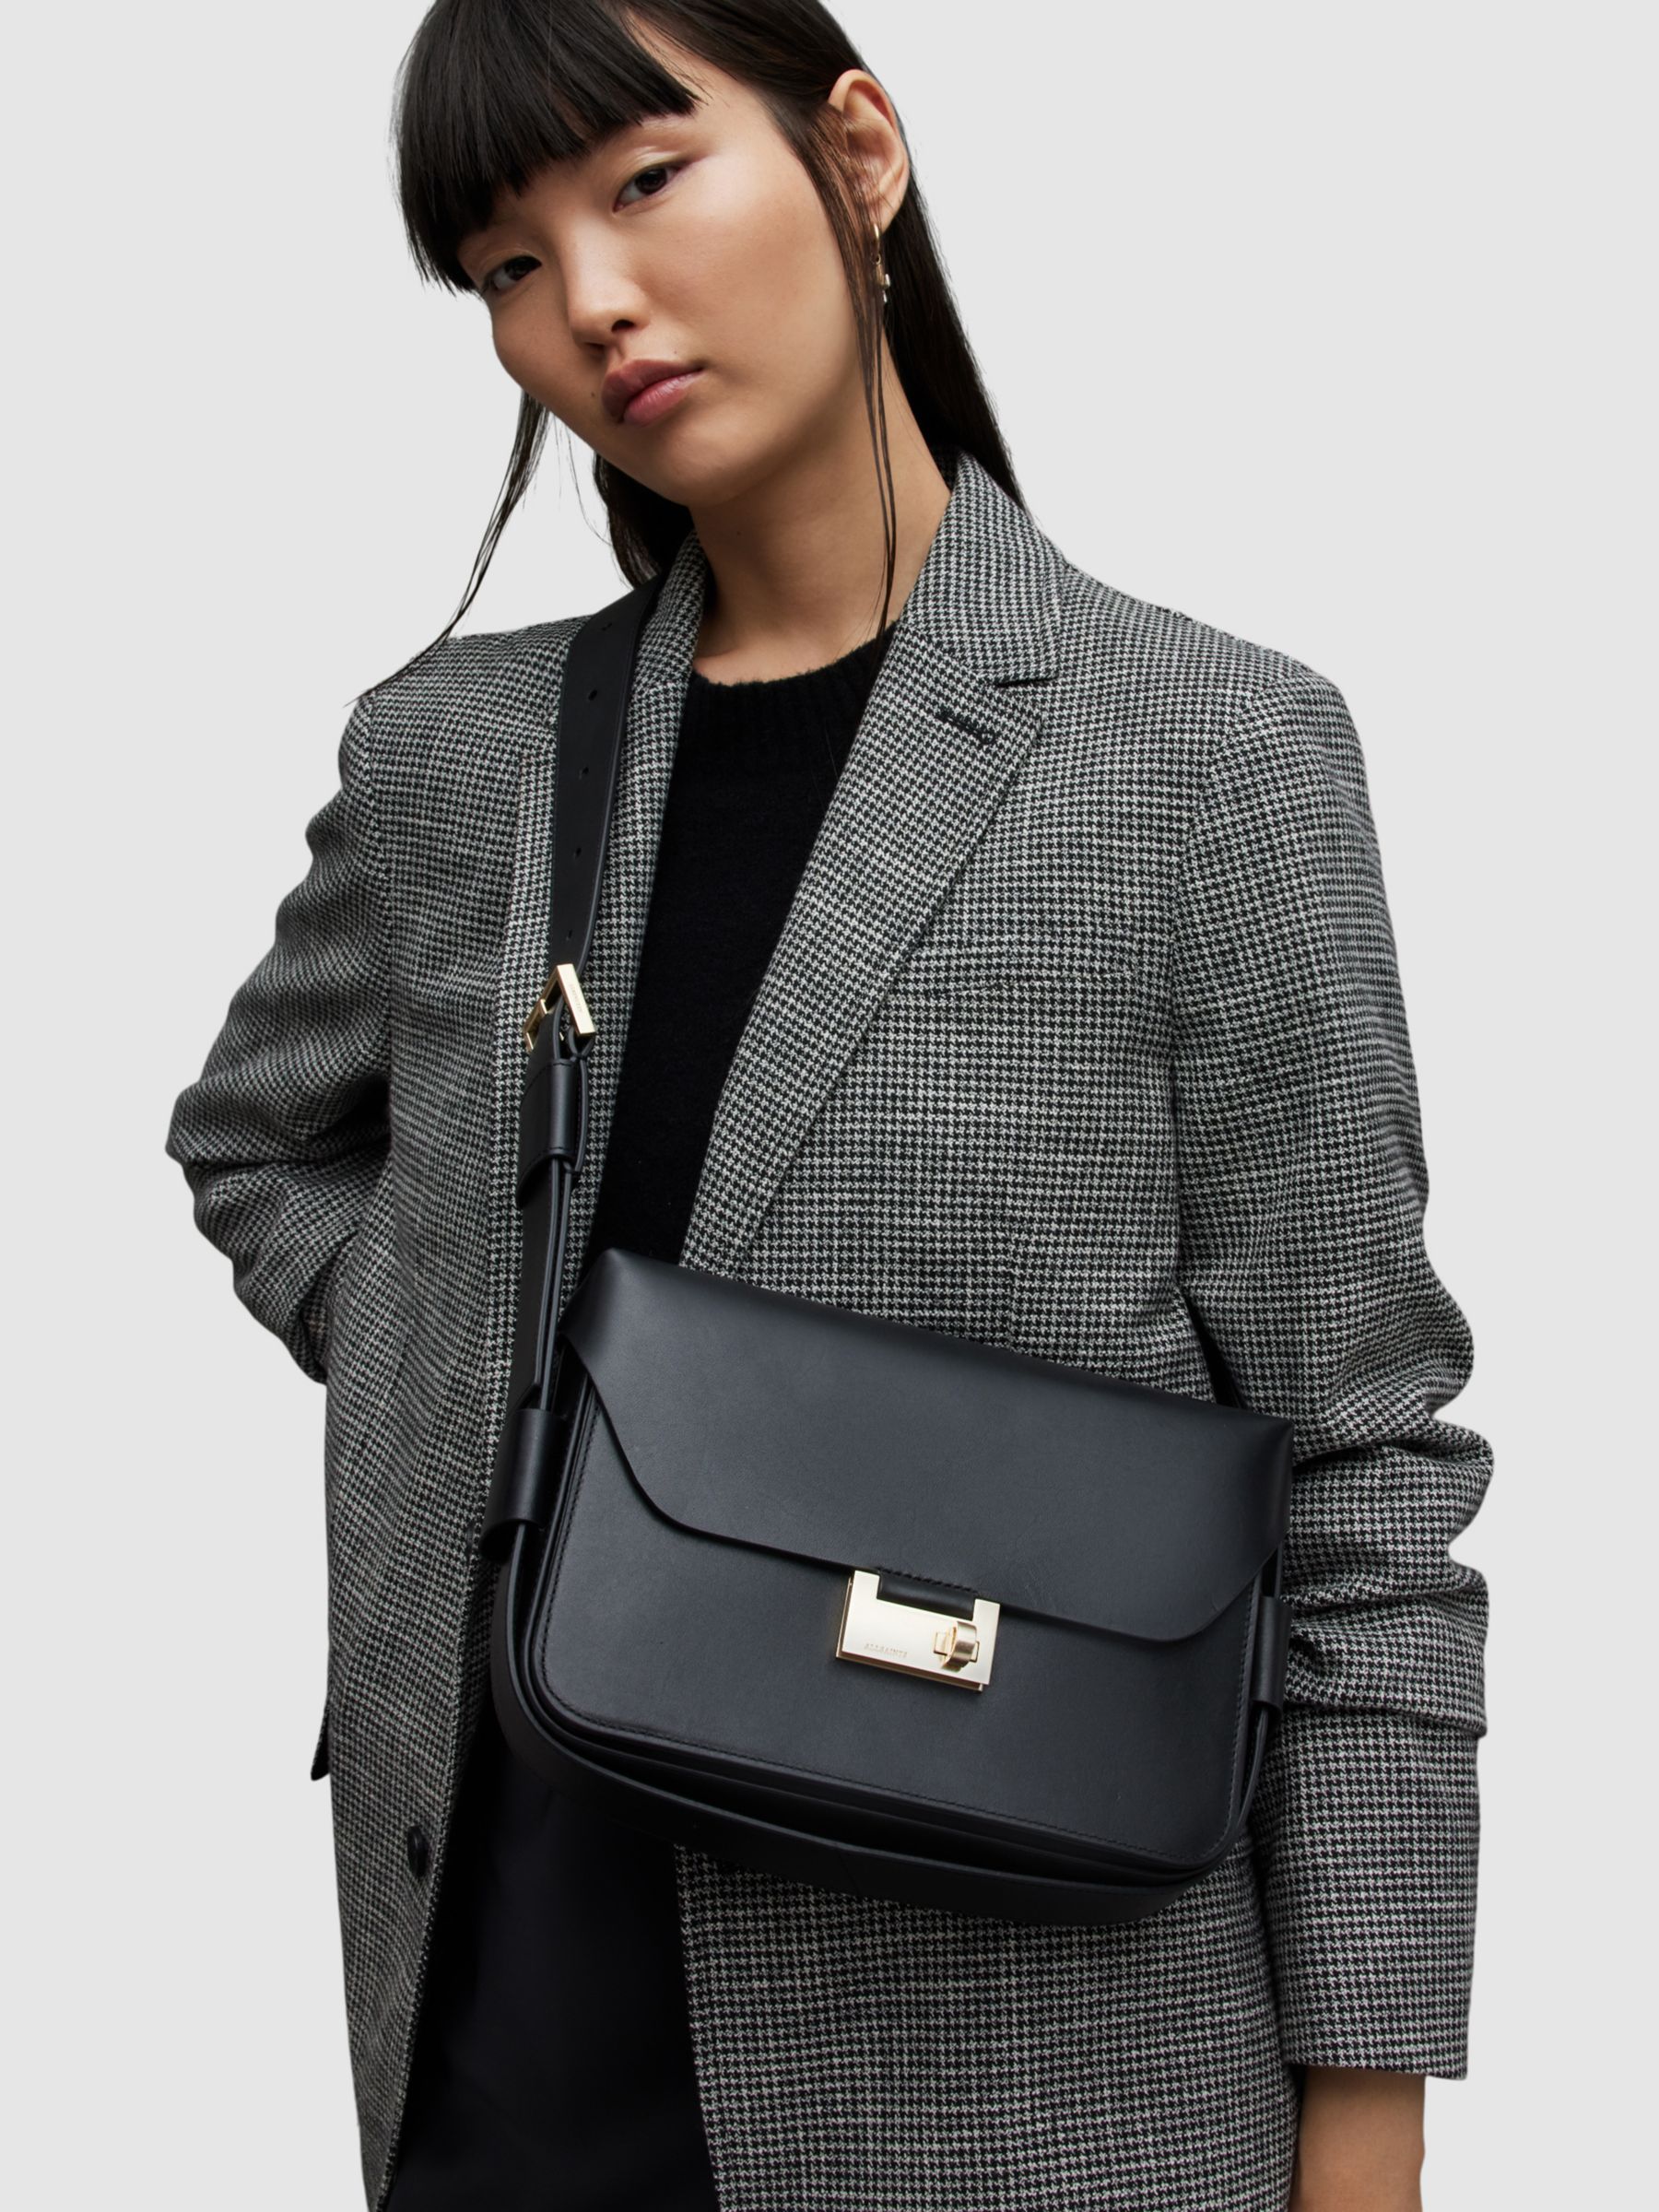 AllSaints Etienne Leather Shoulder Bag, Black at John Lewis & Partners